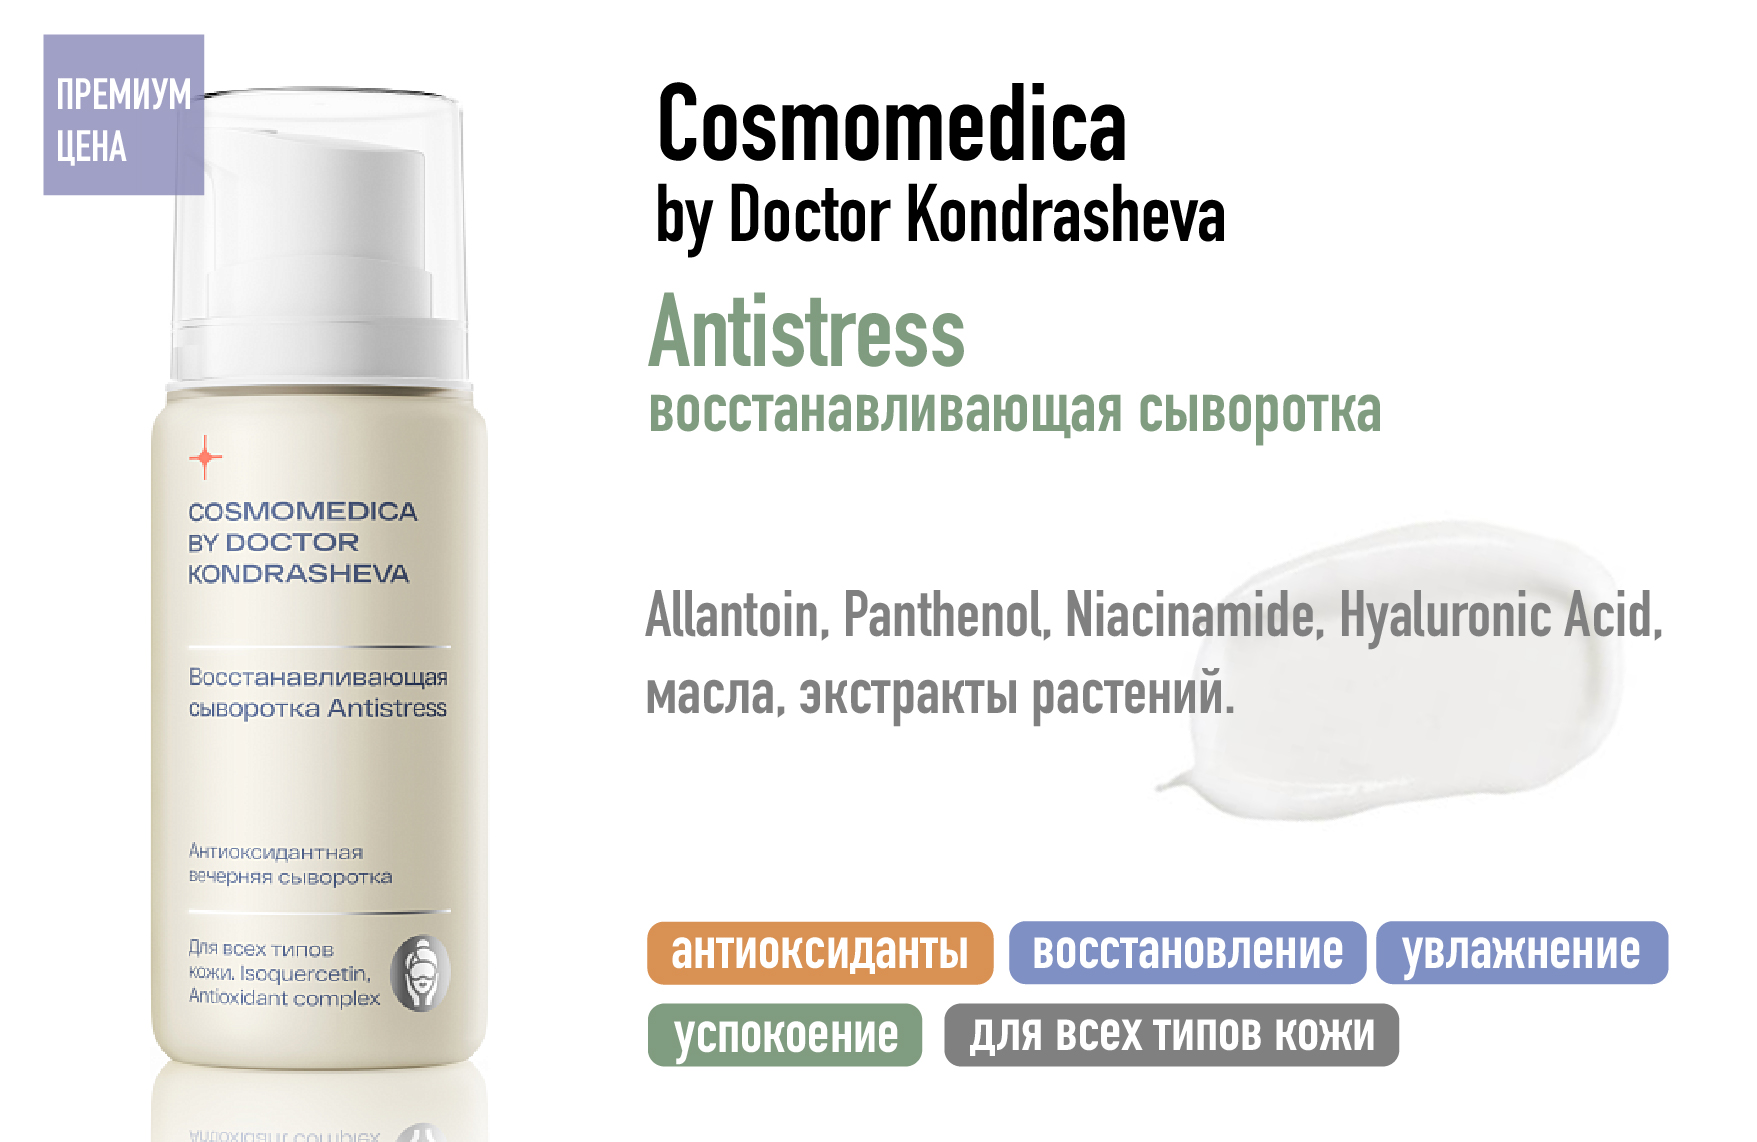 Сosmomedica by Doctor Kondrasheva Antistress / Восстанавливающая сыворотка